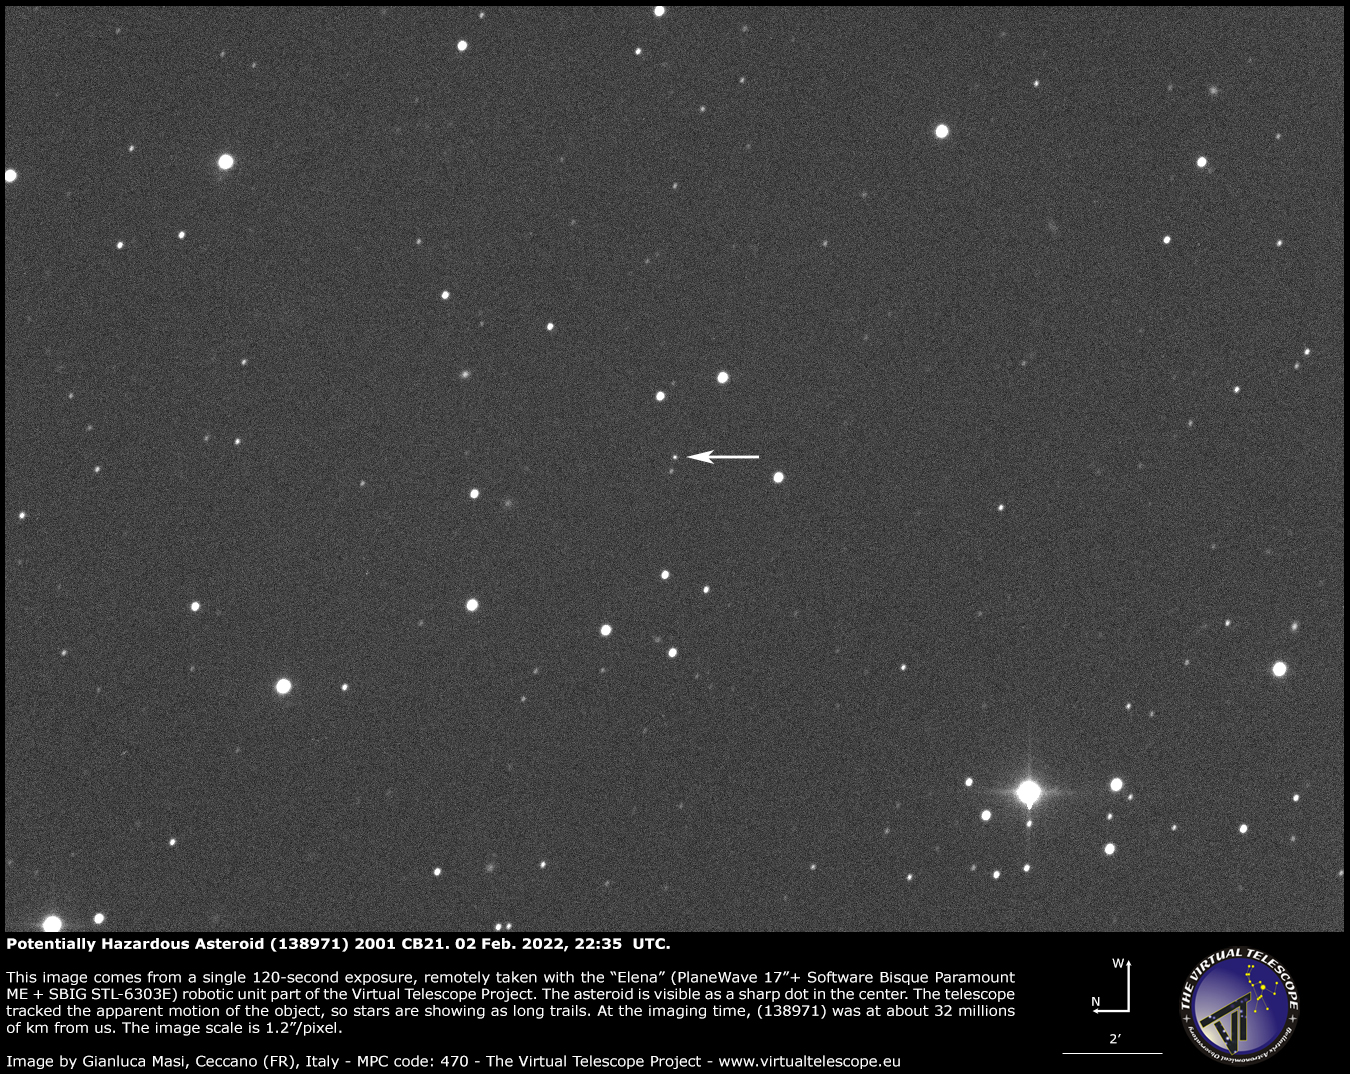 Potentially Hazardous Asteroid (138971) 2001 CB21: 2 Feb. 2022.